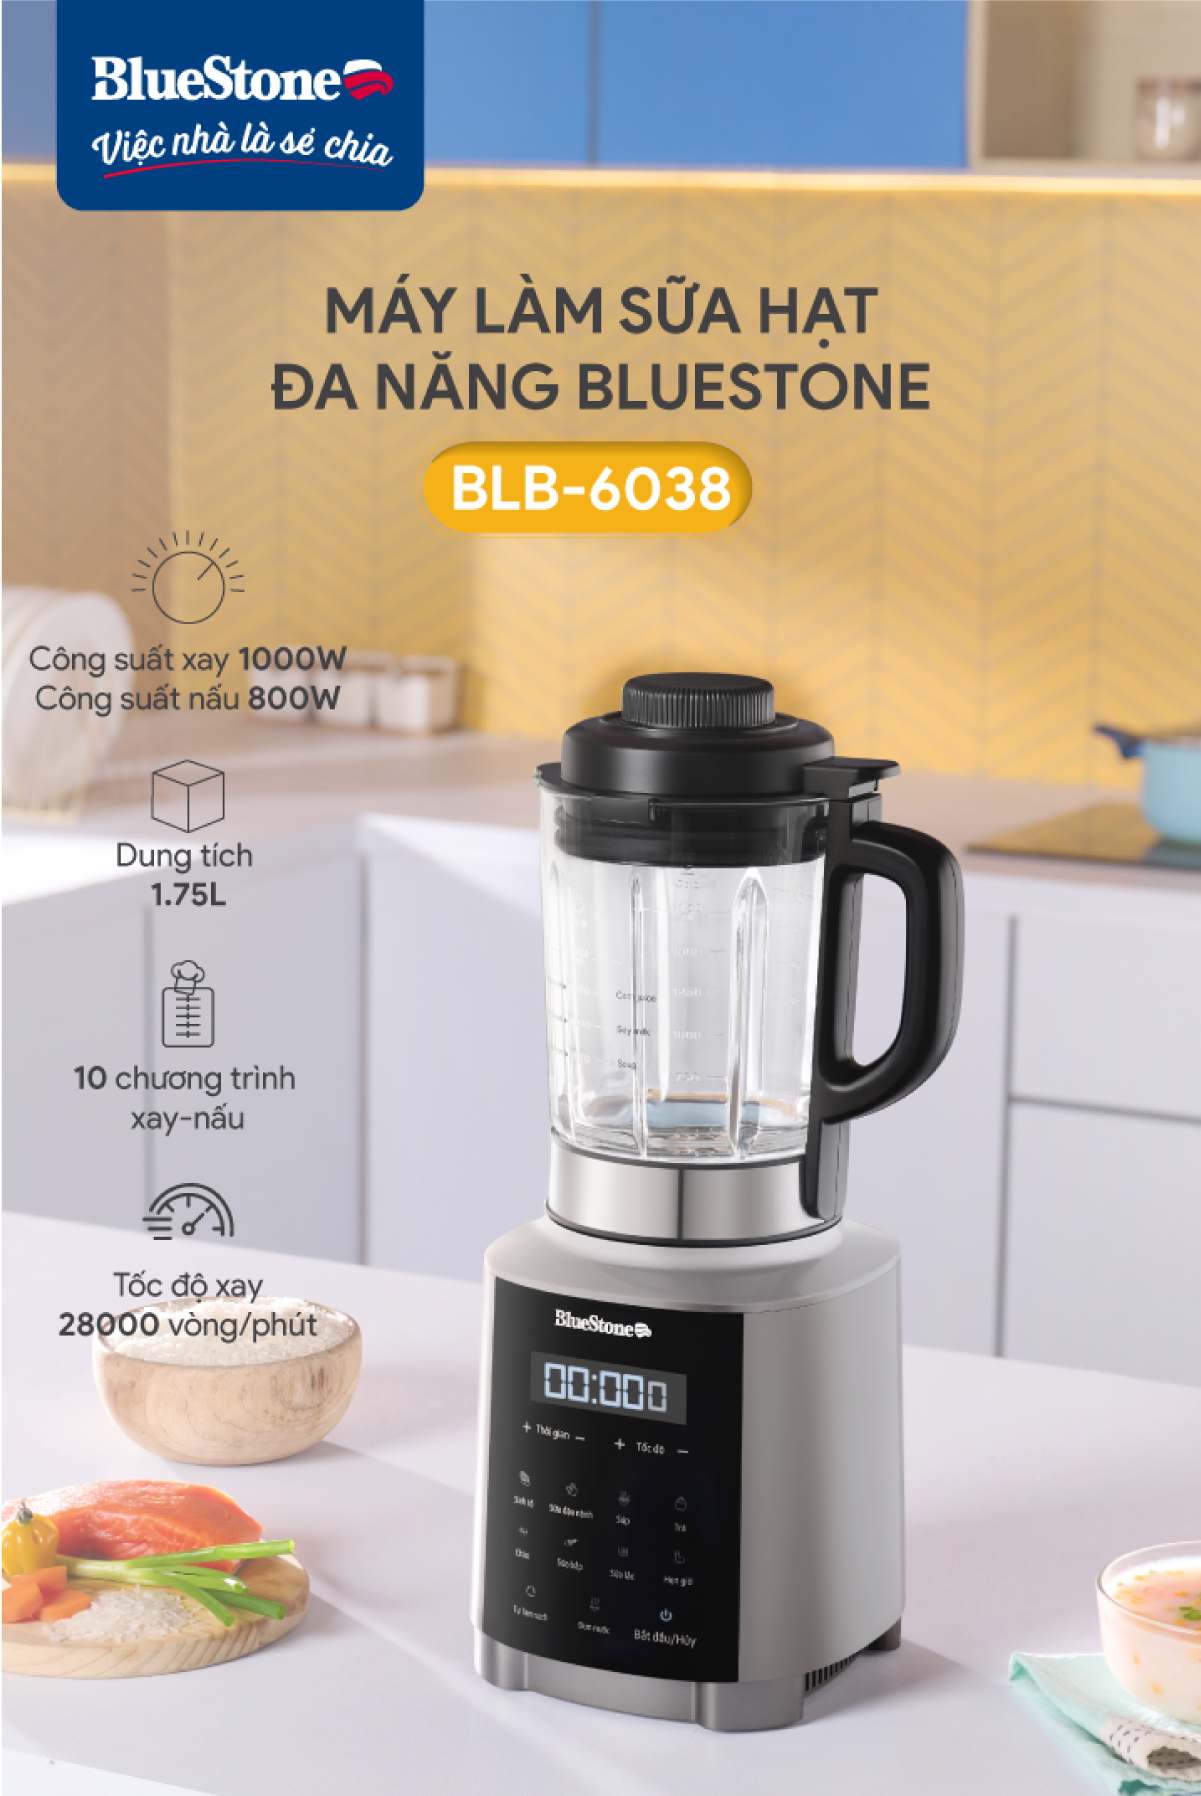 [Trả Góp 0%] Máy Xay Nấu Sữa Hạt Đa Năng  BlueStone BLB-6038 - Công suất 1000W - 7 chương trình nấu - Bảo hàng 24 tháng - Hàng chính hãng